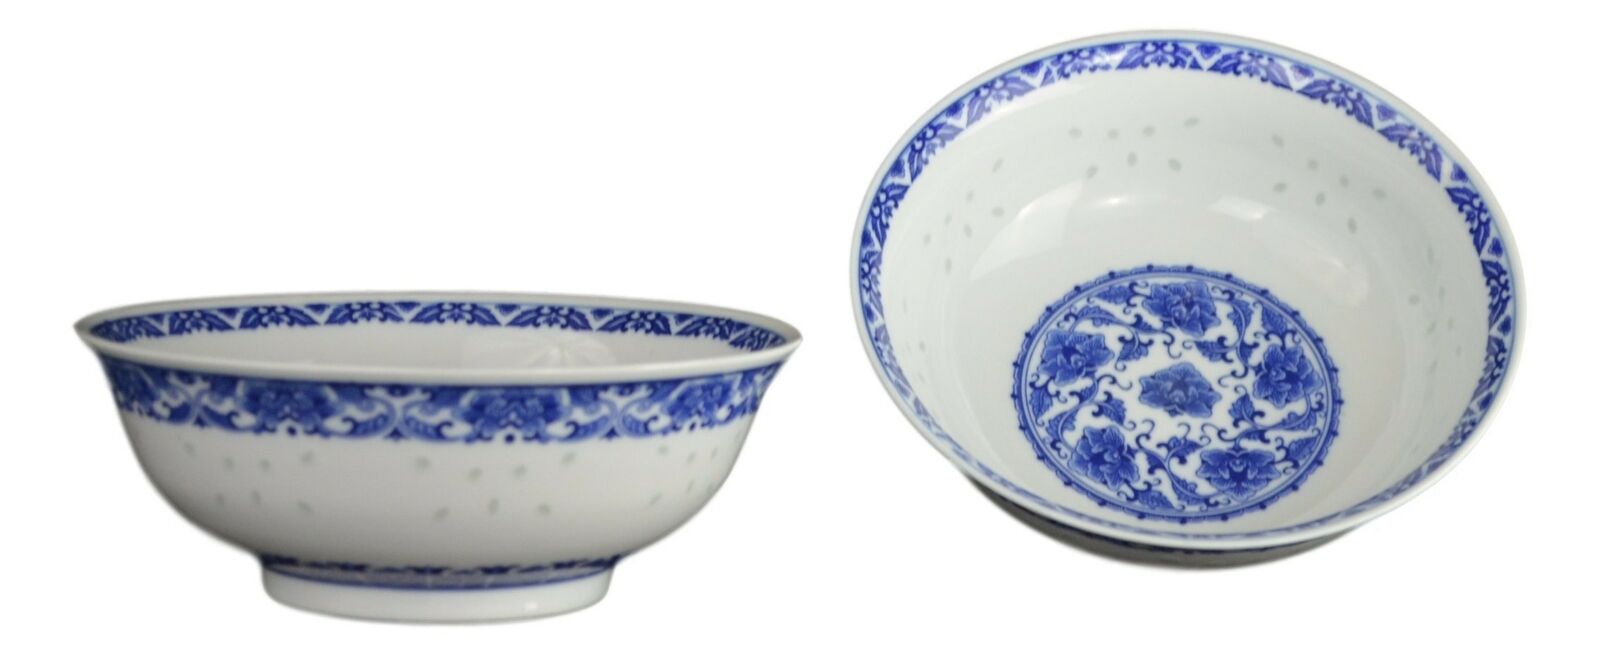 8.4 Inch Large Noodle/Salad/Dessert Ceramic Bowl, Blue and White Porcelain, O...